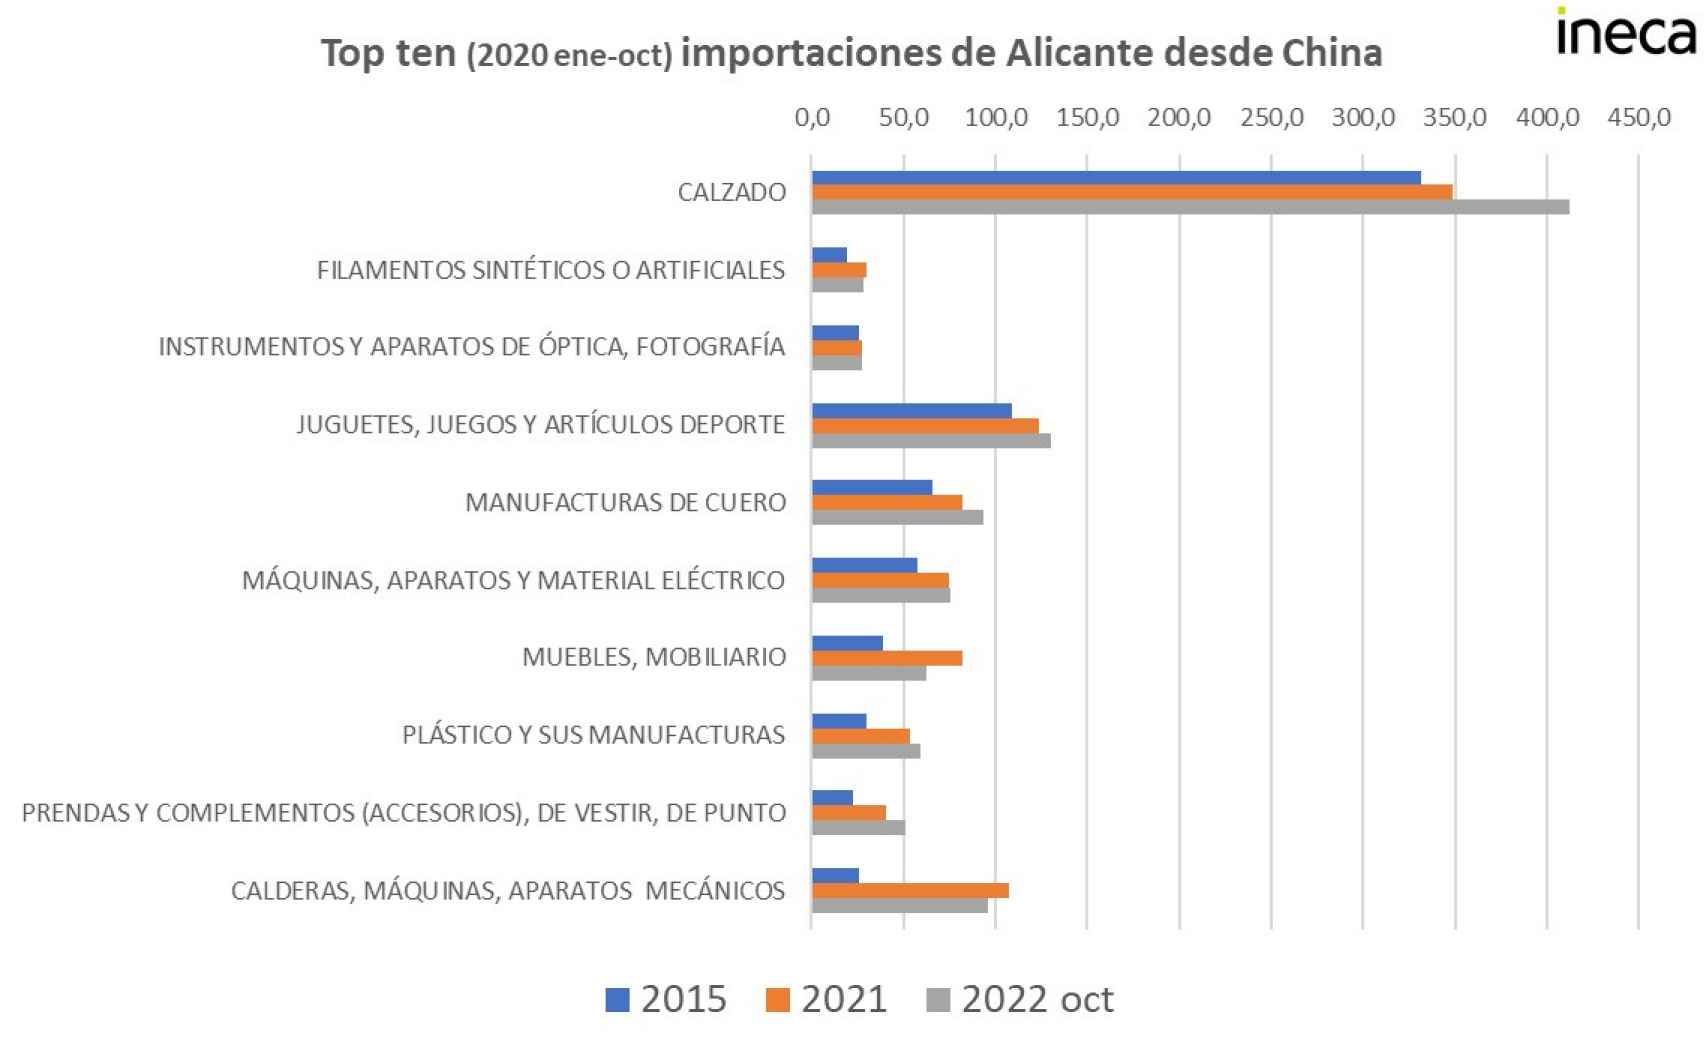 Tabla de importaciones de Alicante desde China.